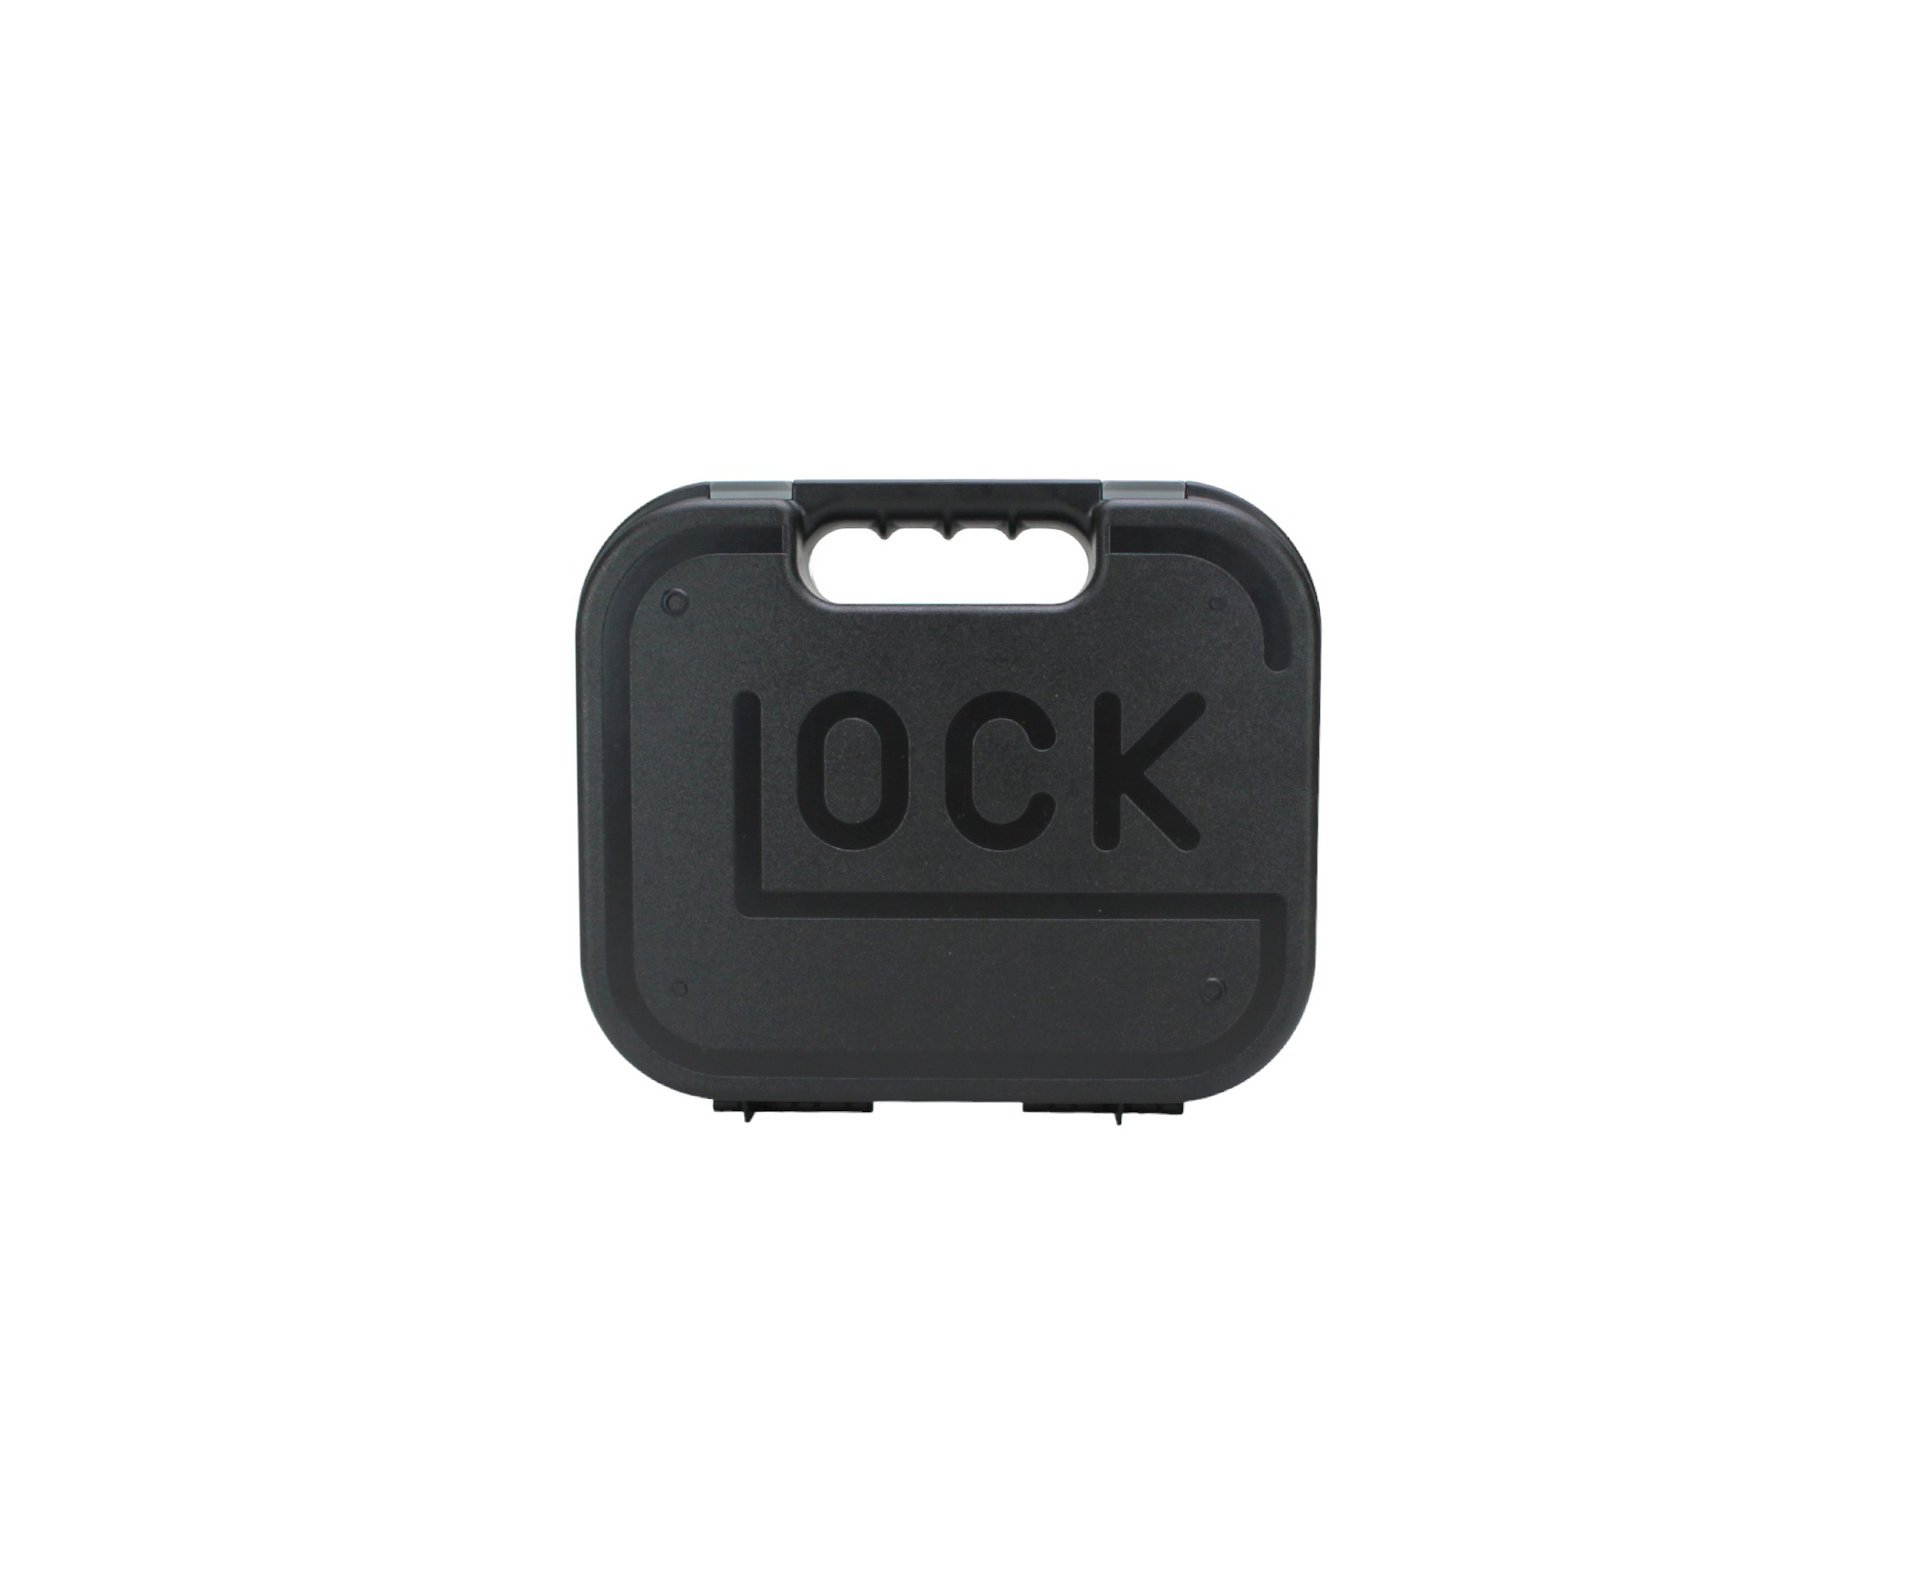 Artefato de Pressão Co2 Glock G17 4.5mm - Chumbinho